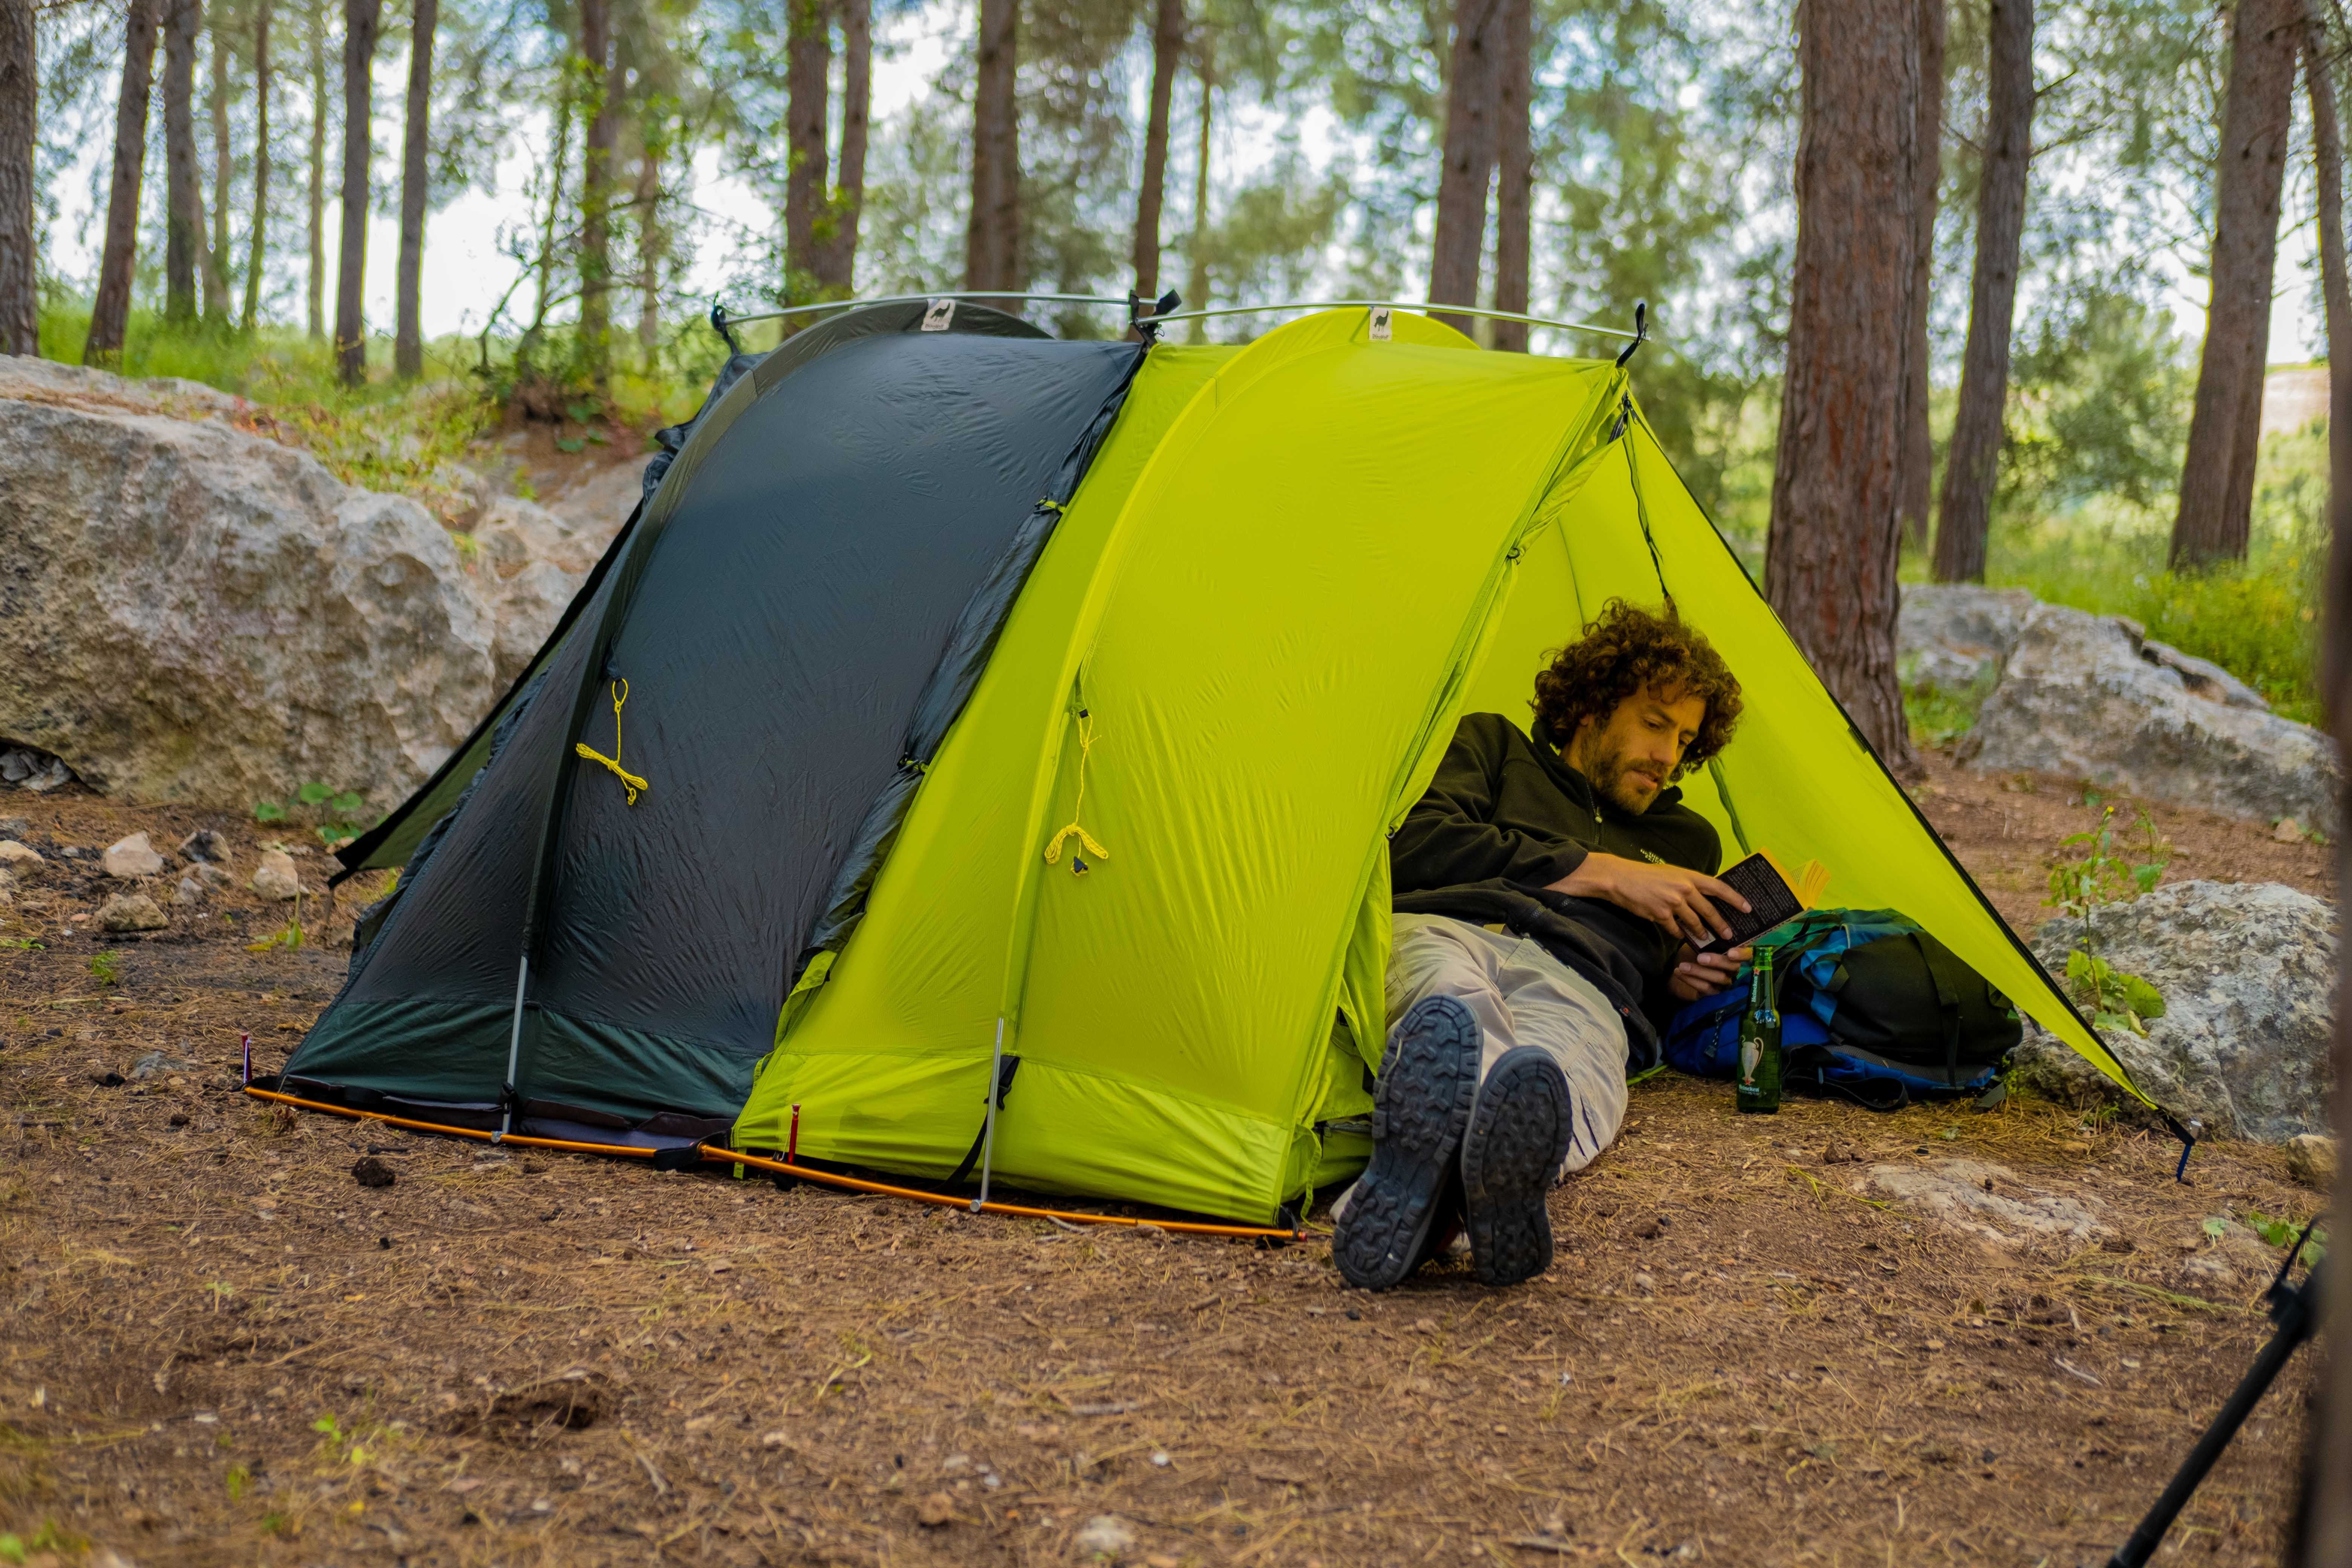 Палатка в полный рост. “Modular Tent System” палатки. Спать в палатке. Палатки для кемпинга. Ночевка в палатке.